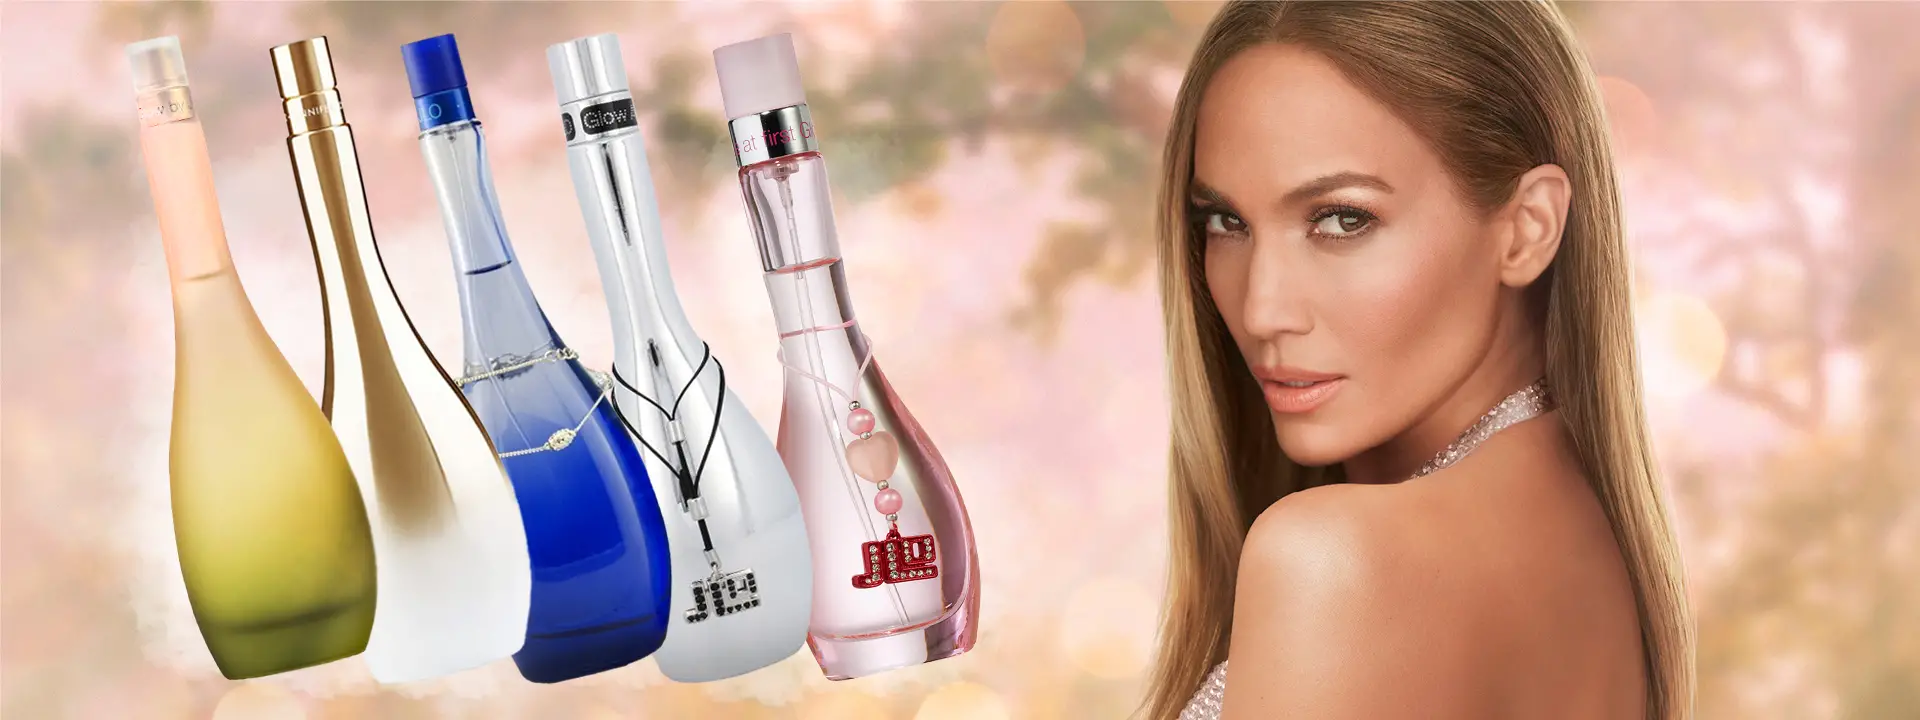 Hướng dẫn cơ bản về dòng nước hoa JLo Glow của Jennifer Lopez